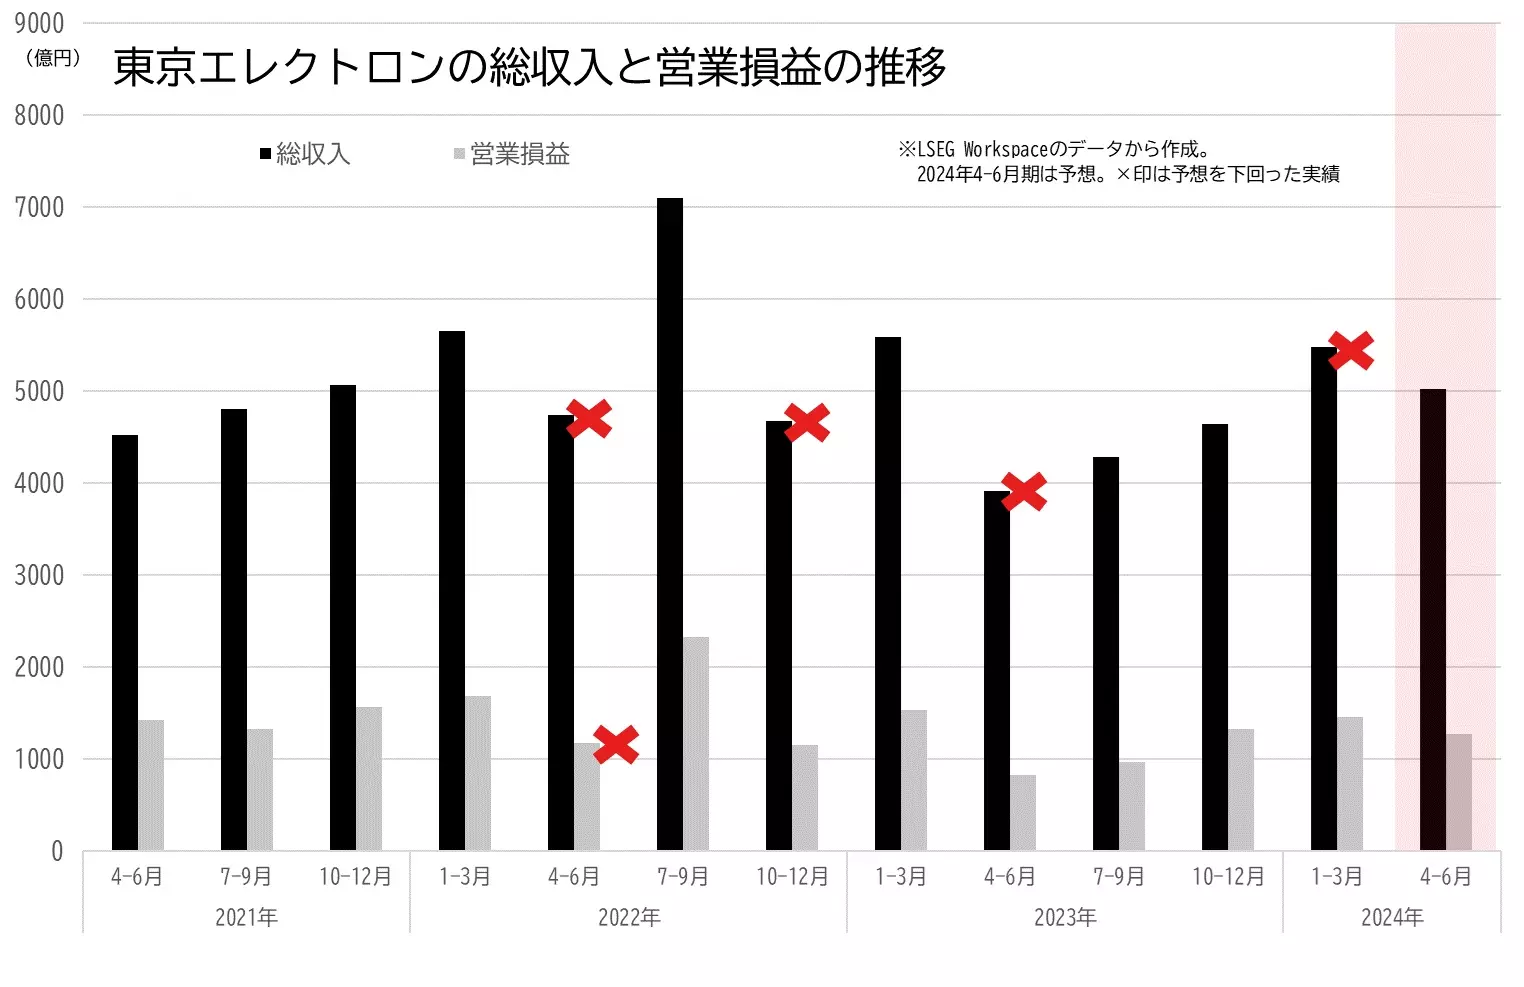 東京エレクトロンの業績（総収入、営業利益）の推移のグラフ